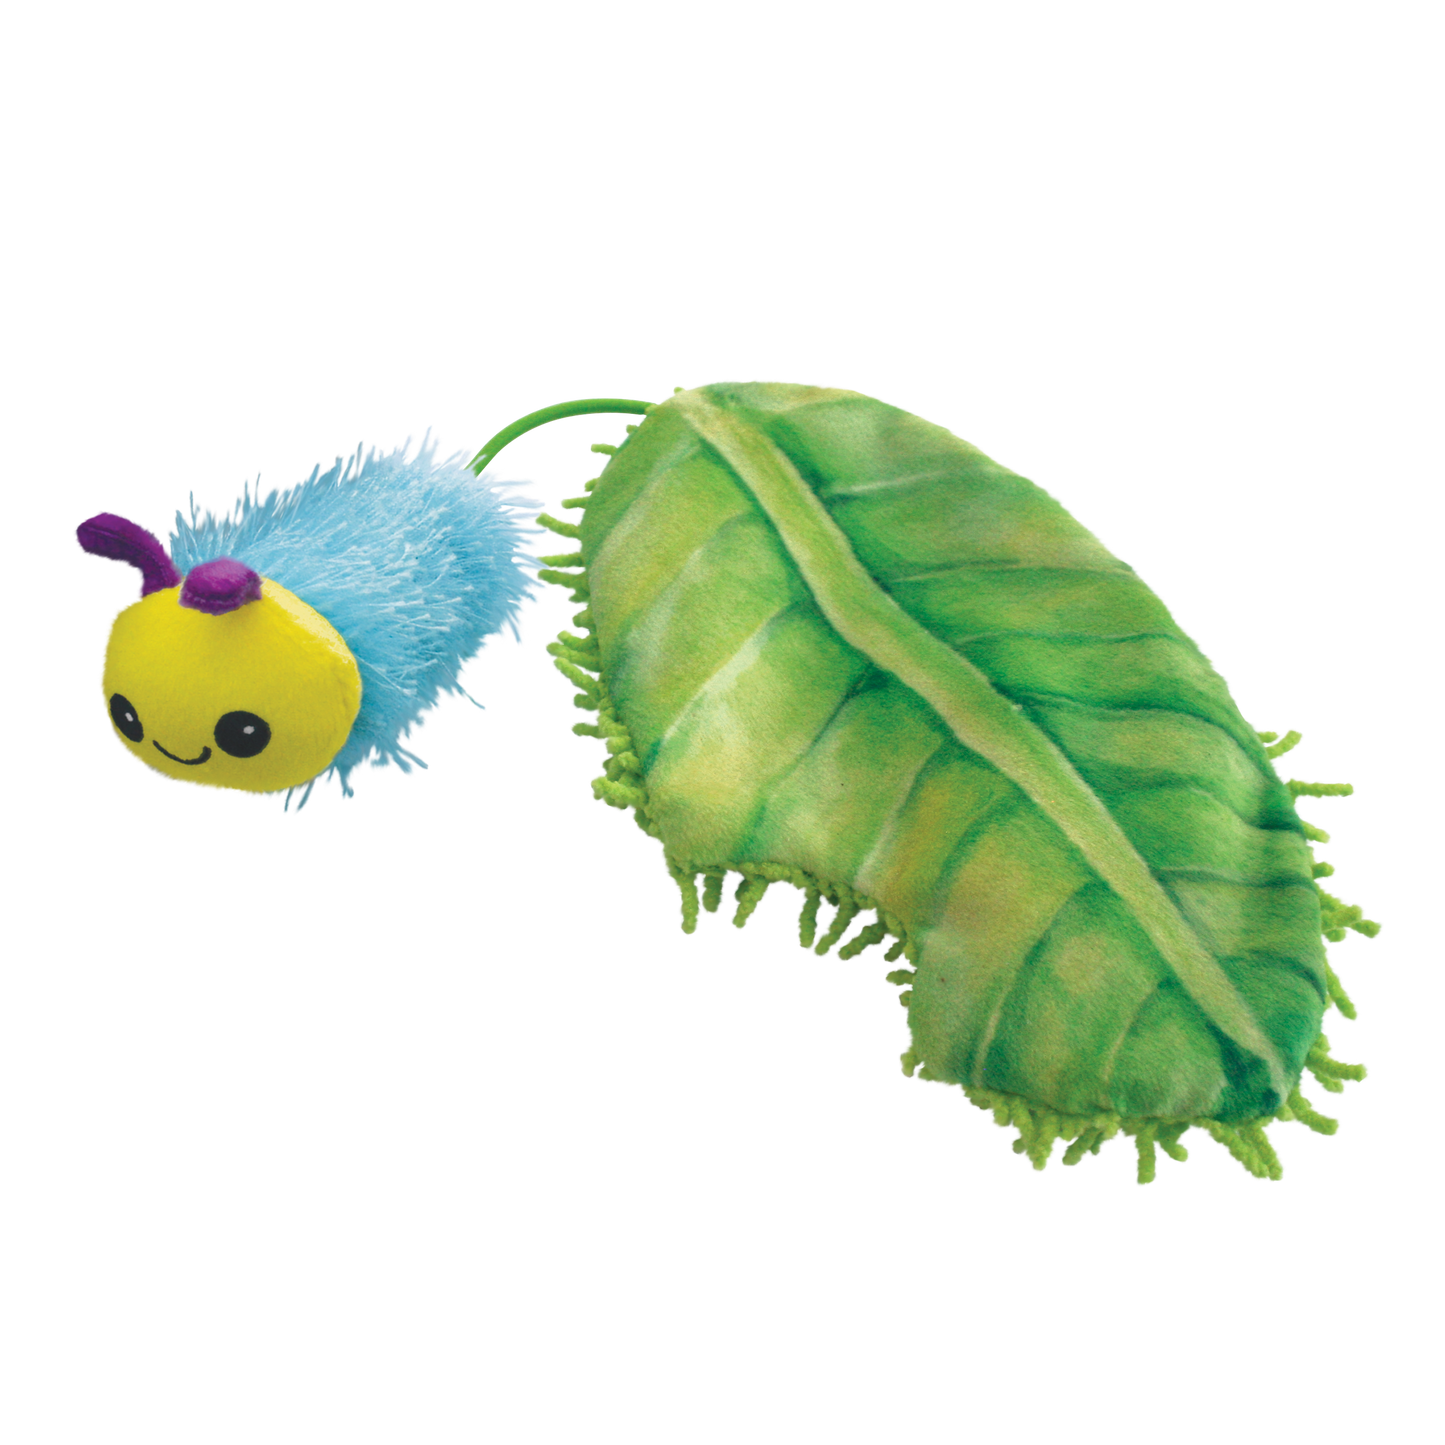 Kong Flingaroo Caterpillar Cat Toy 25.40x8.26x3.18cm